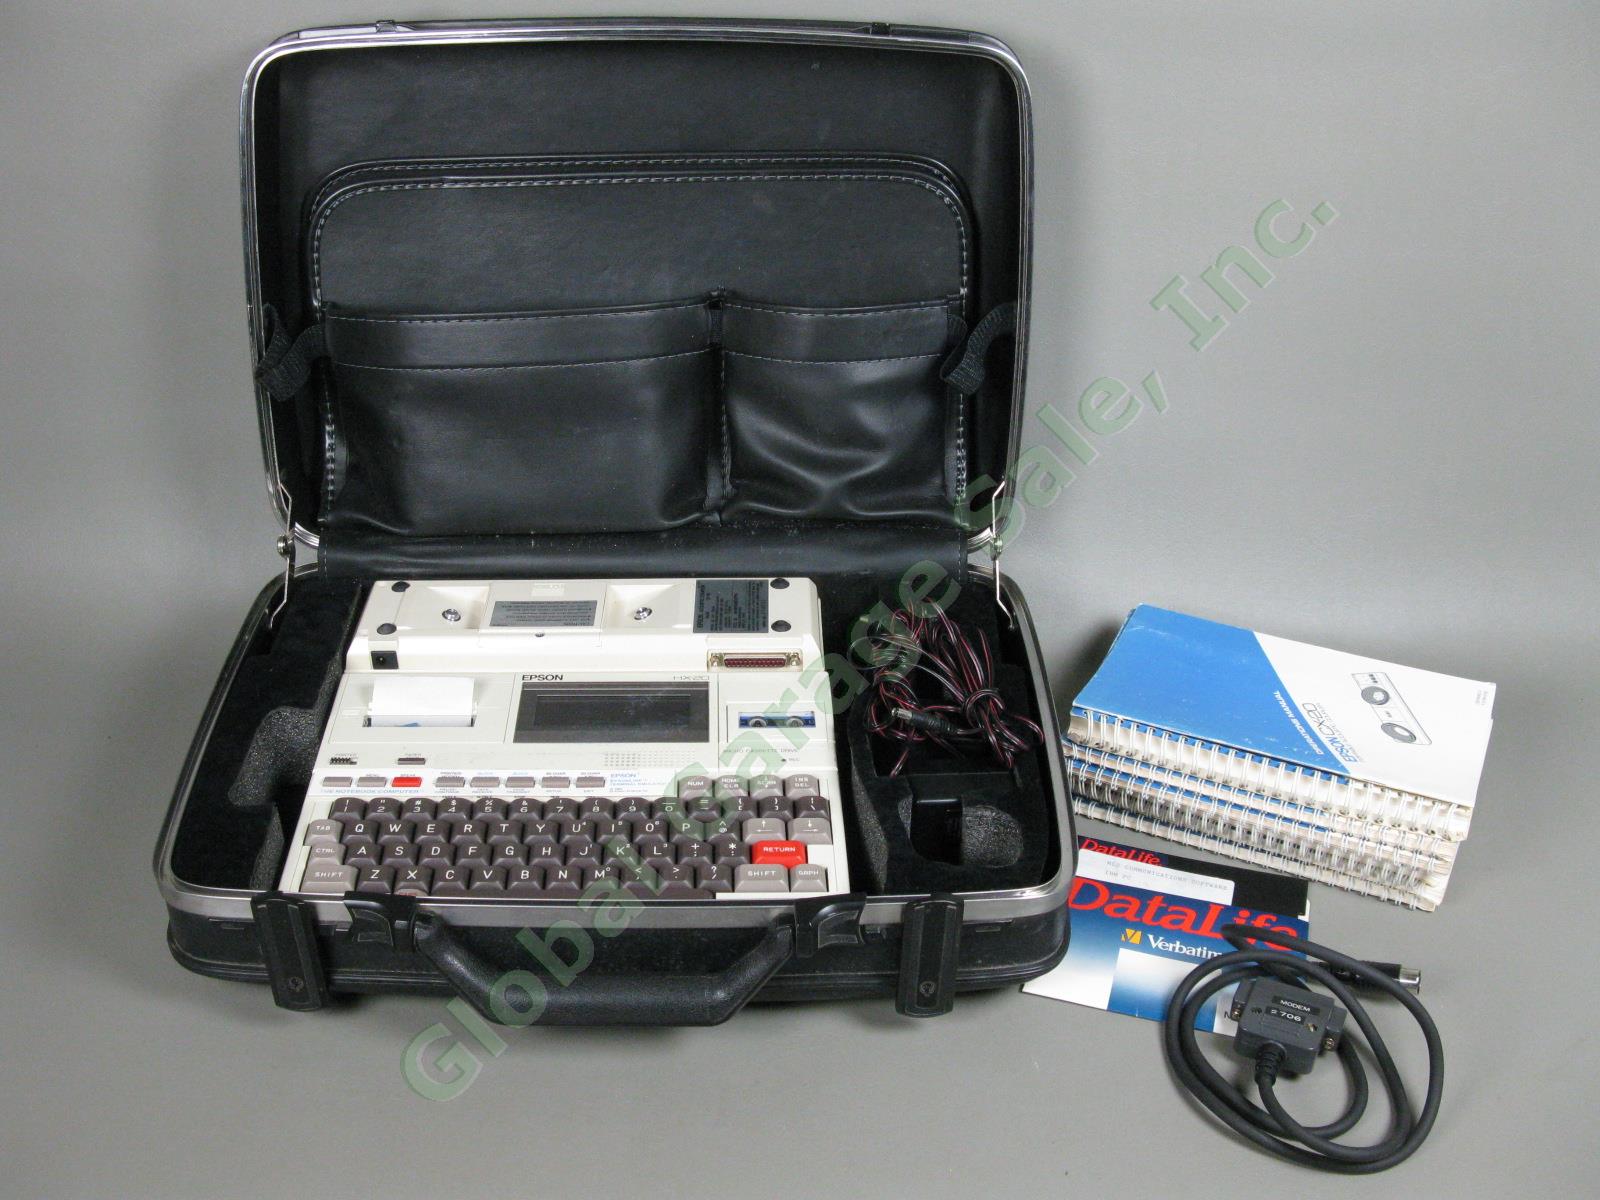 Vintage Epson HX20 Personal Computer Printer + Acoustic Coupler Modem + Case NR